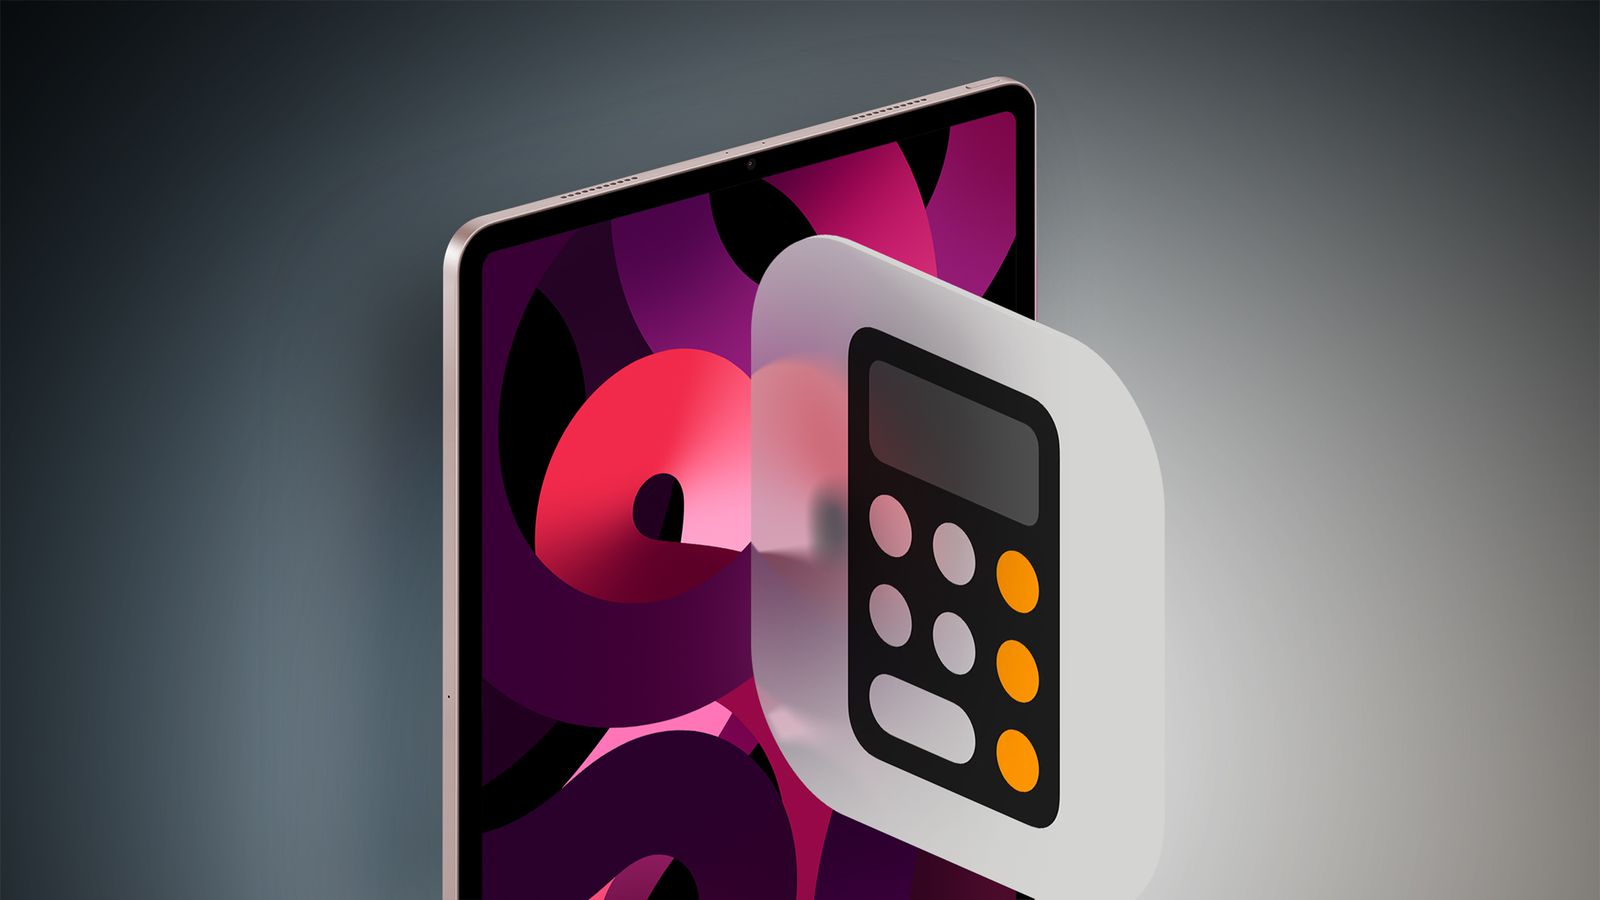 من iPhoneIslam.com، جهاز لوحي رقمي يعرض رسومات مجردة ملونة خلف أيقونة آلة حاسبة شبه شفافة على خلفية رمادية متدرجة في أبريل.